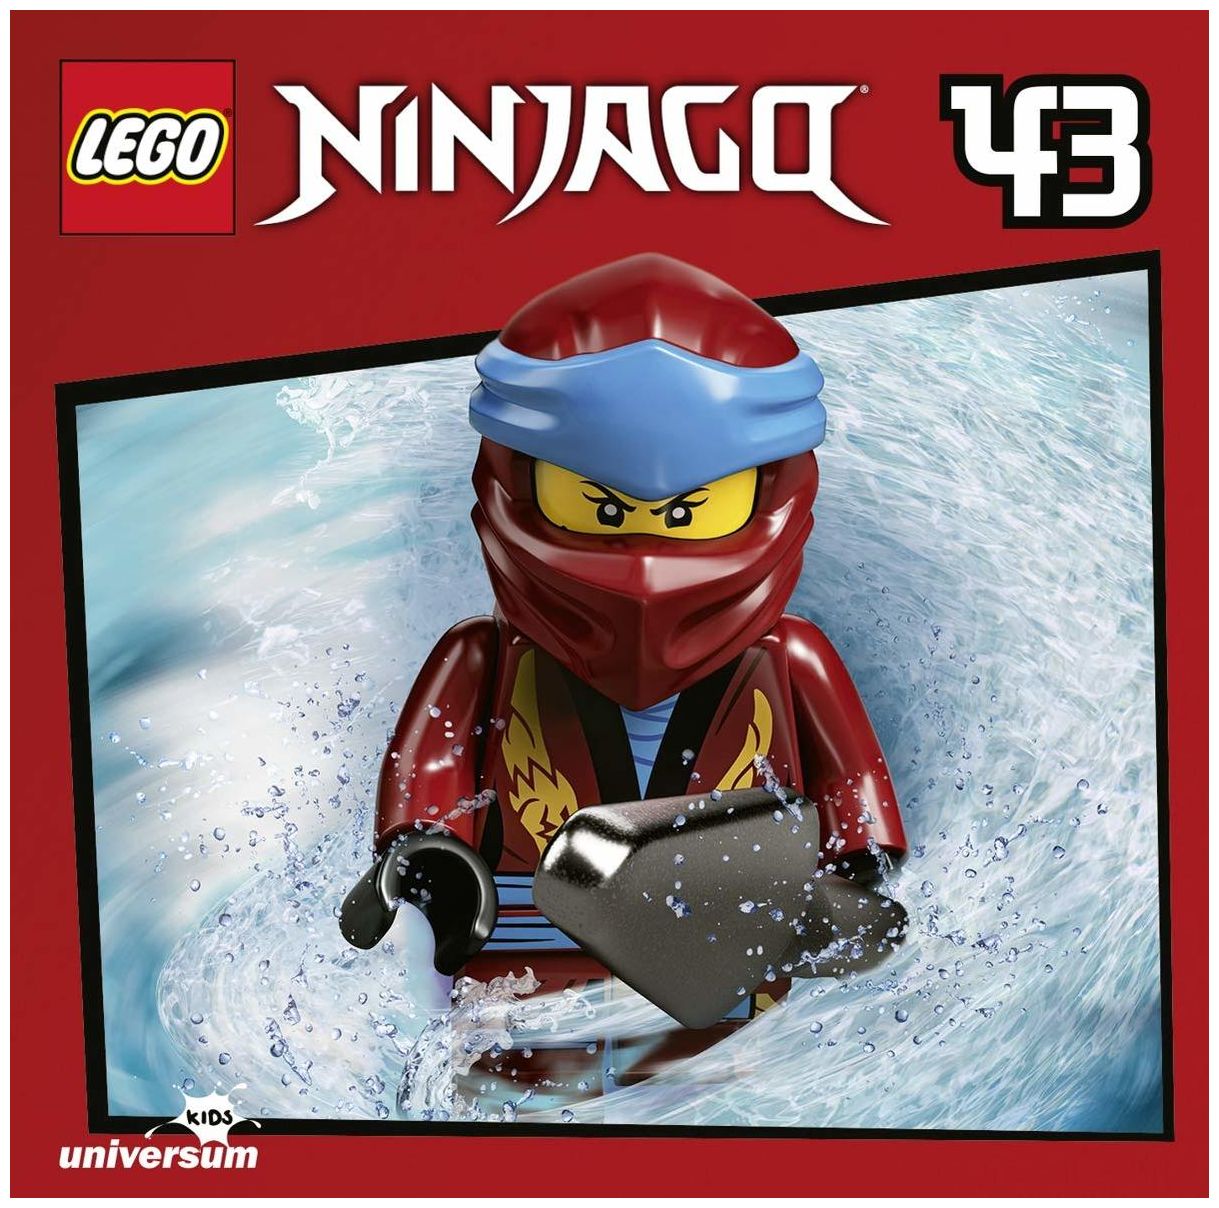 Lego Ninjago (43) 